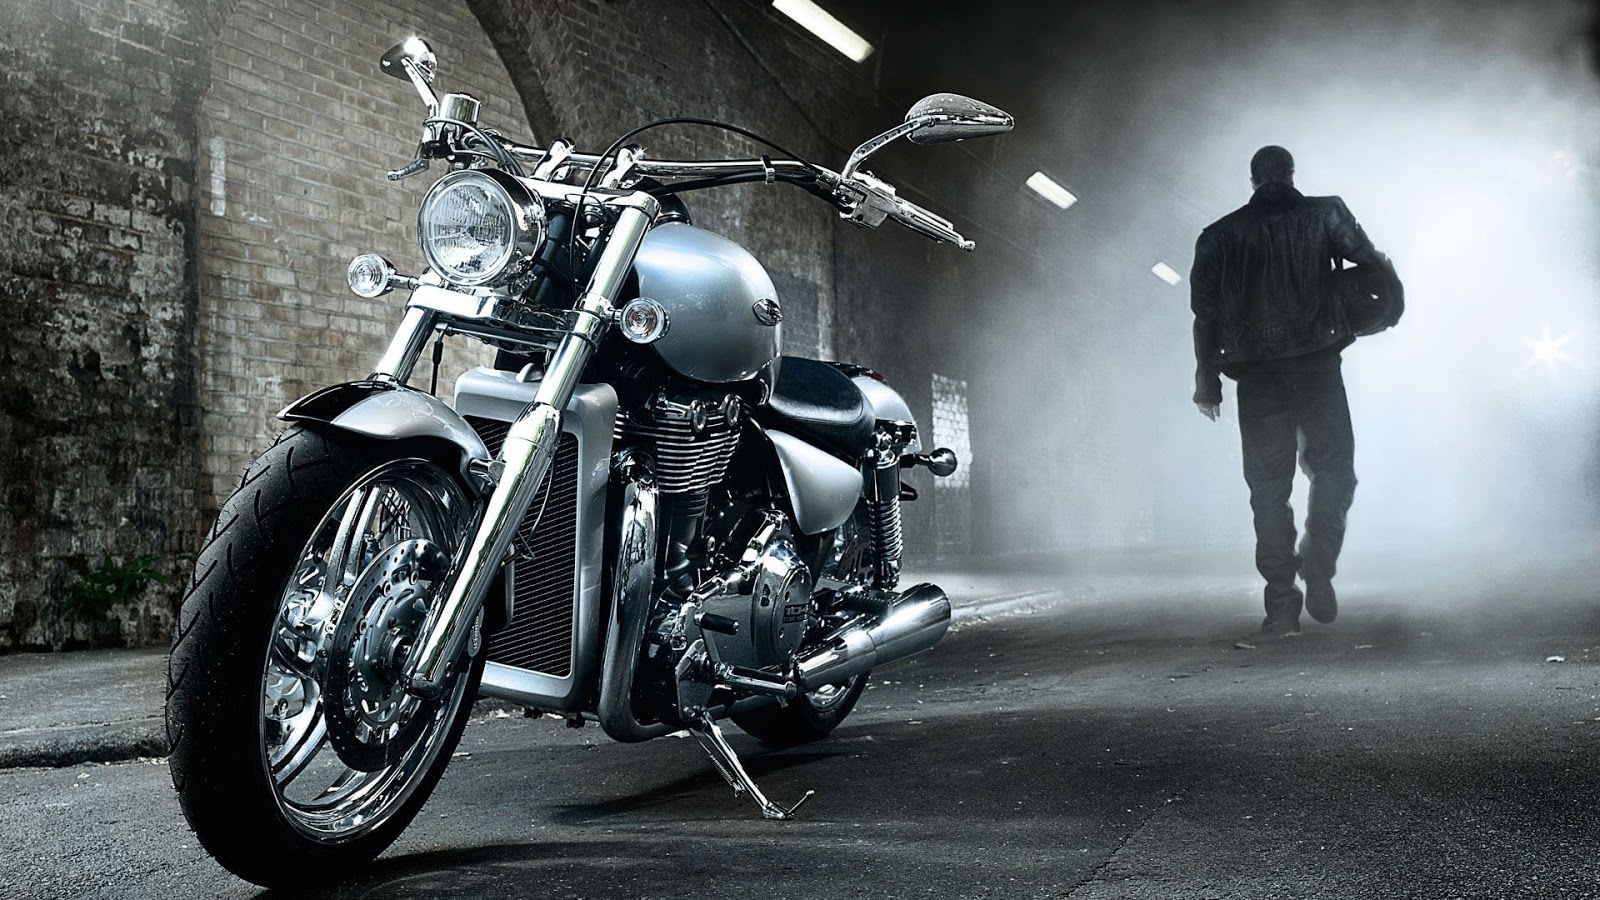 Kumpulan Spesifikasi Dan Harga Motor Harley Davidson Termahal Di